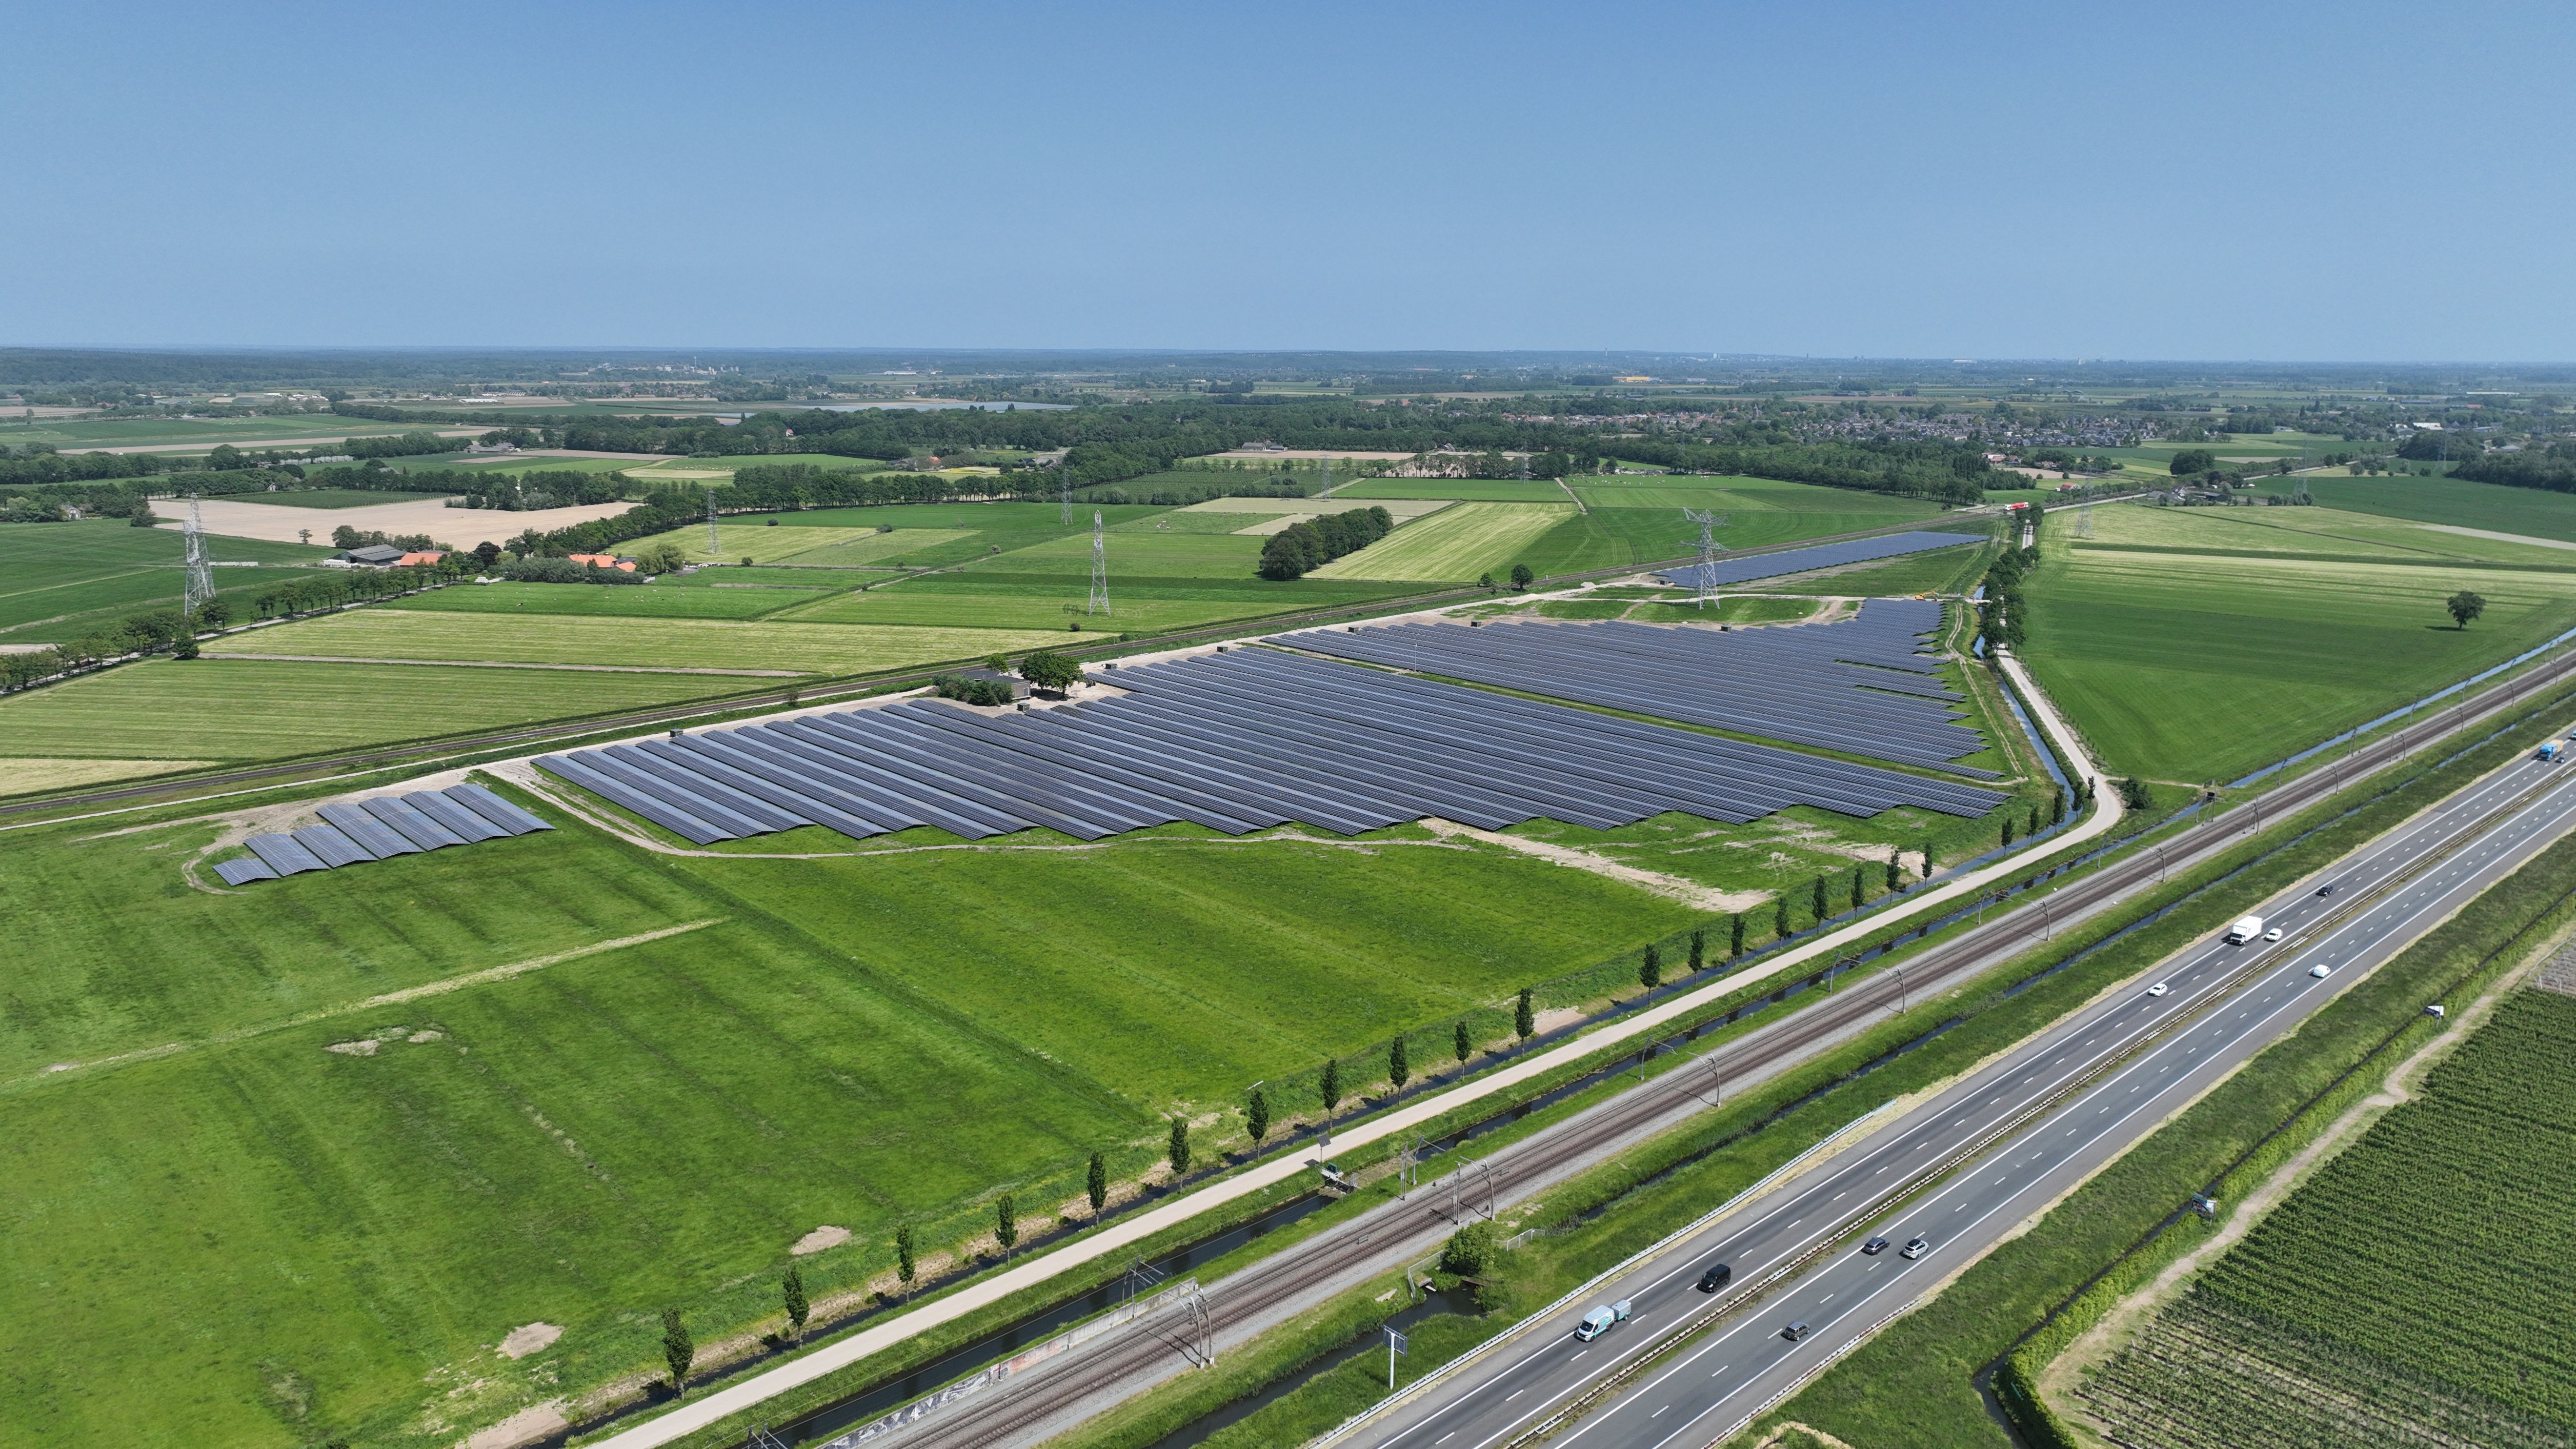 IZEN approvisionne 5.000 ménages en énergie renouvelable grâce à la construction d’un nouveau parc solaire à Hemmen